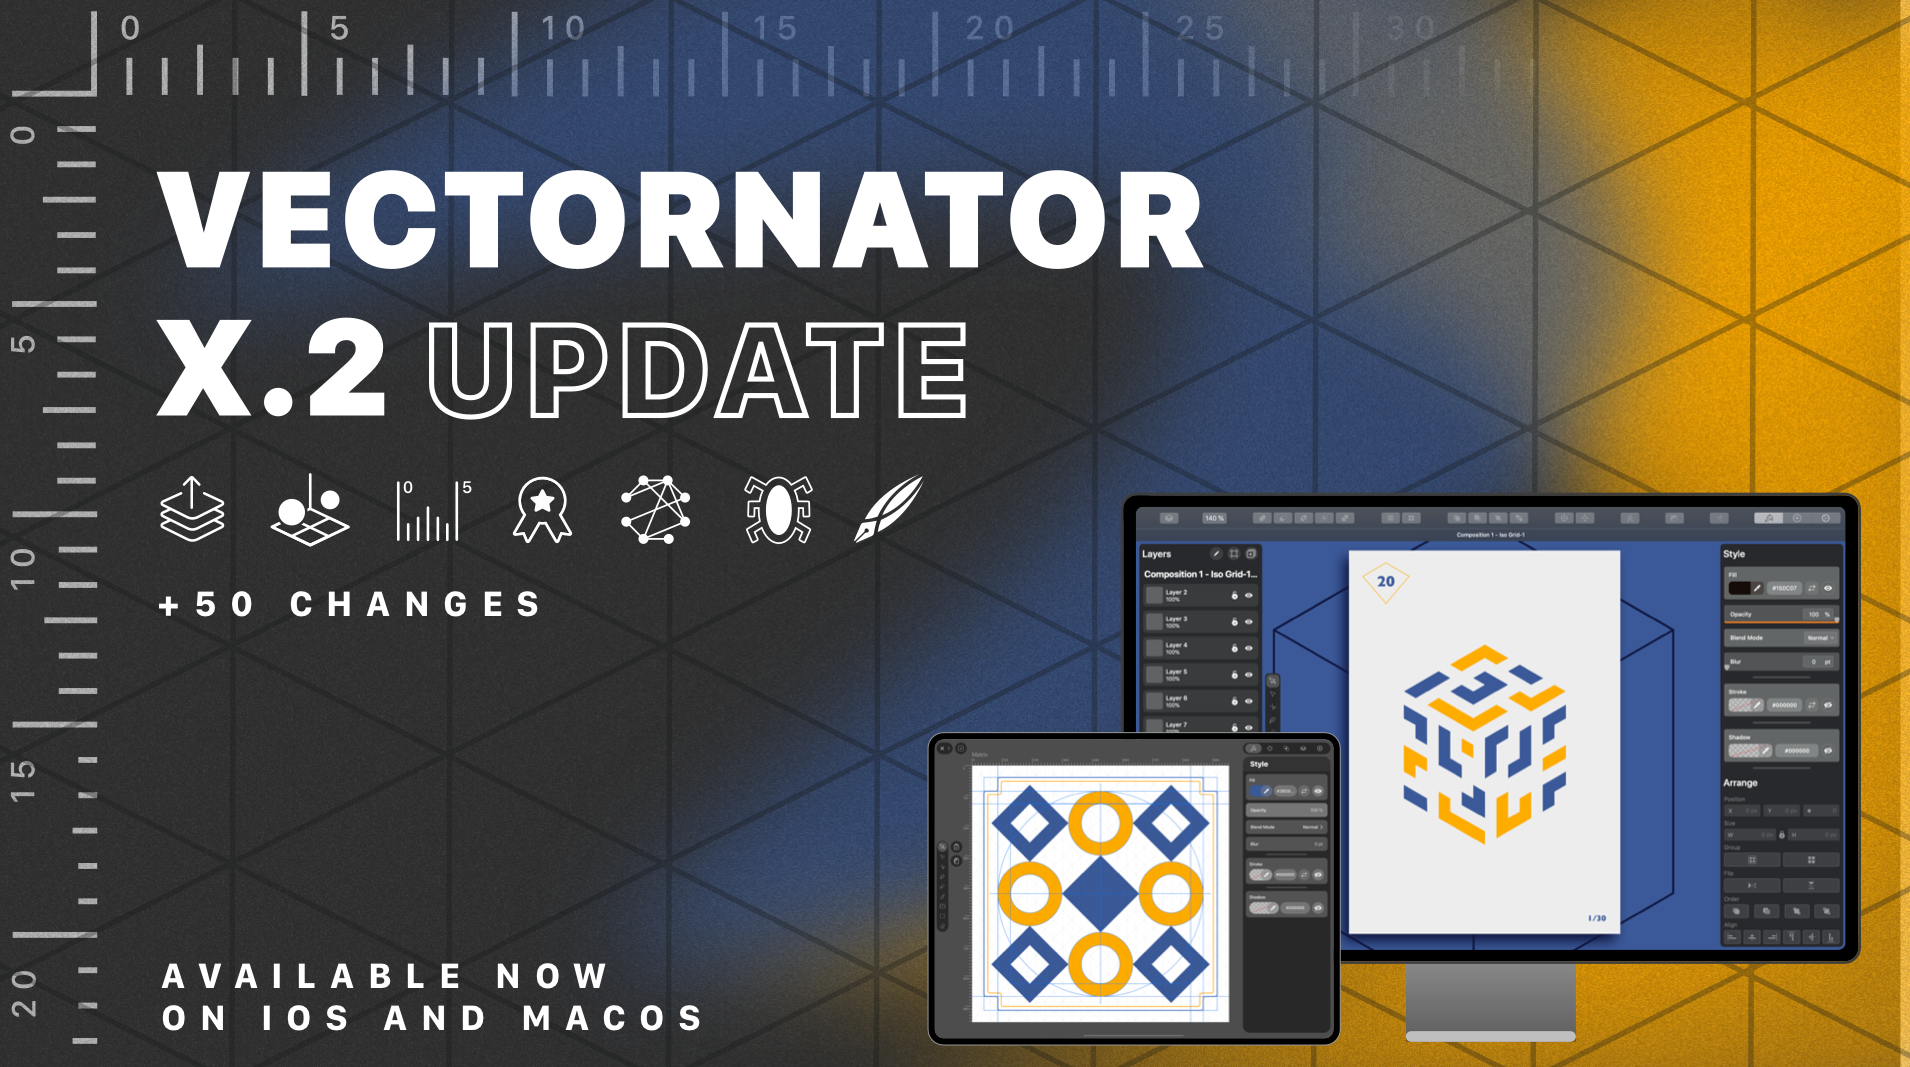 Vectornator X.2 Update